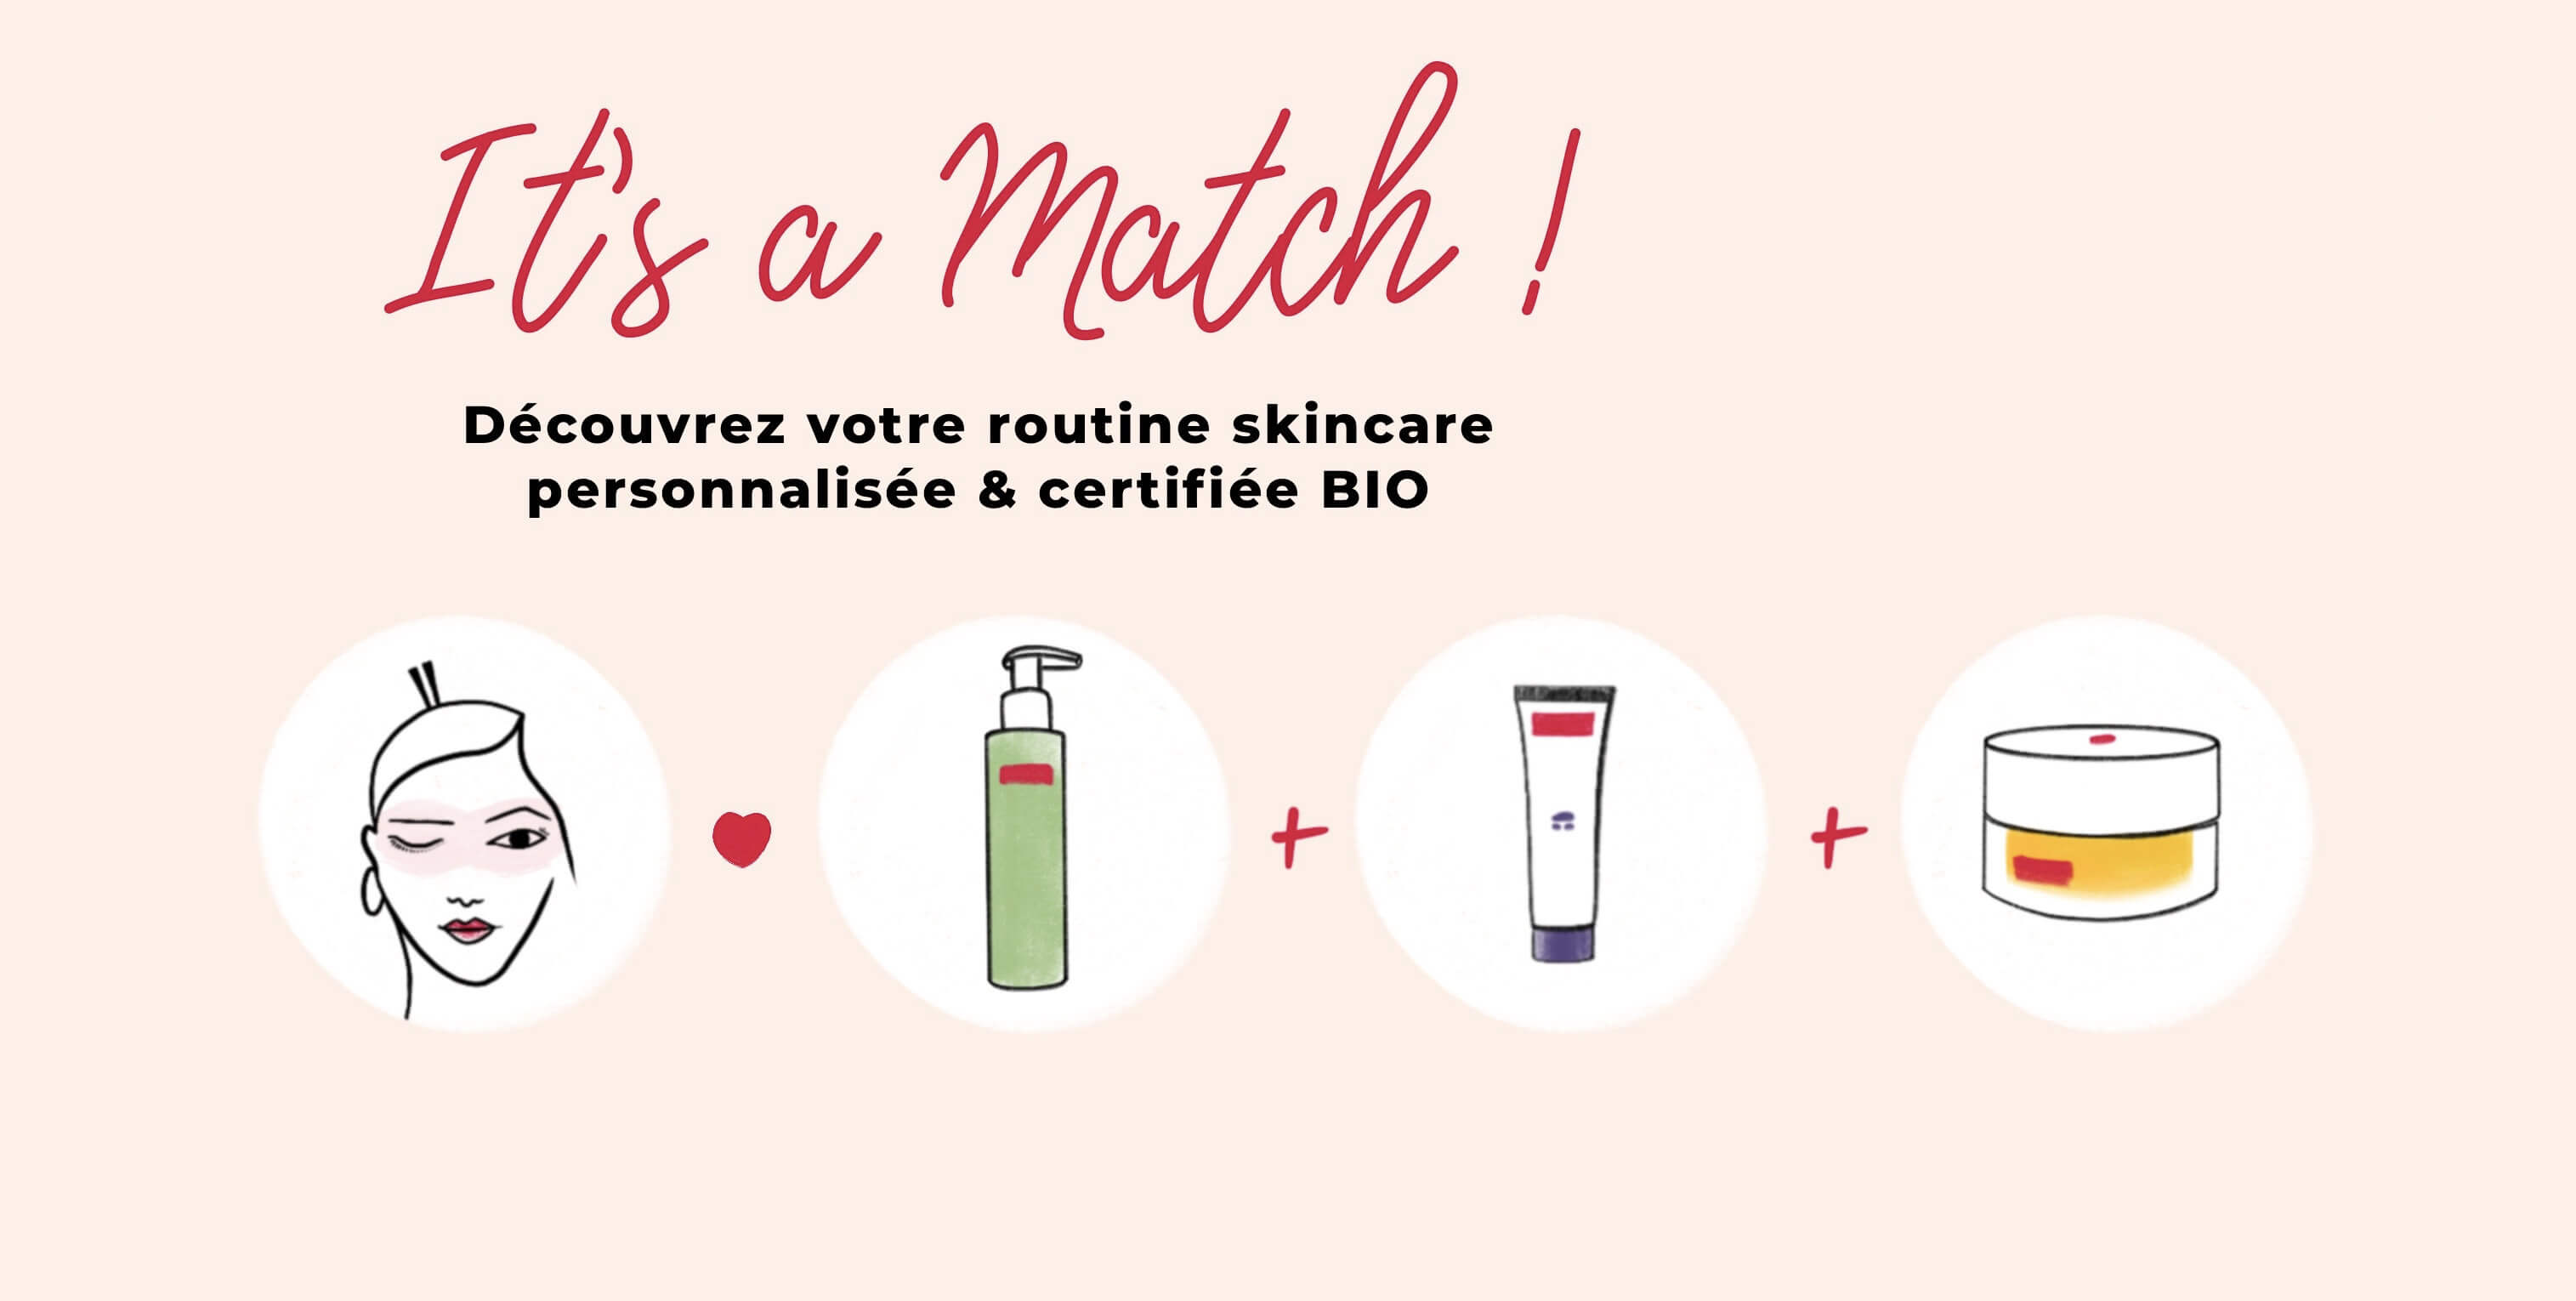 ¿Por qué apoyar los cosméticos "Made in France"?